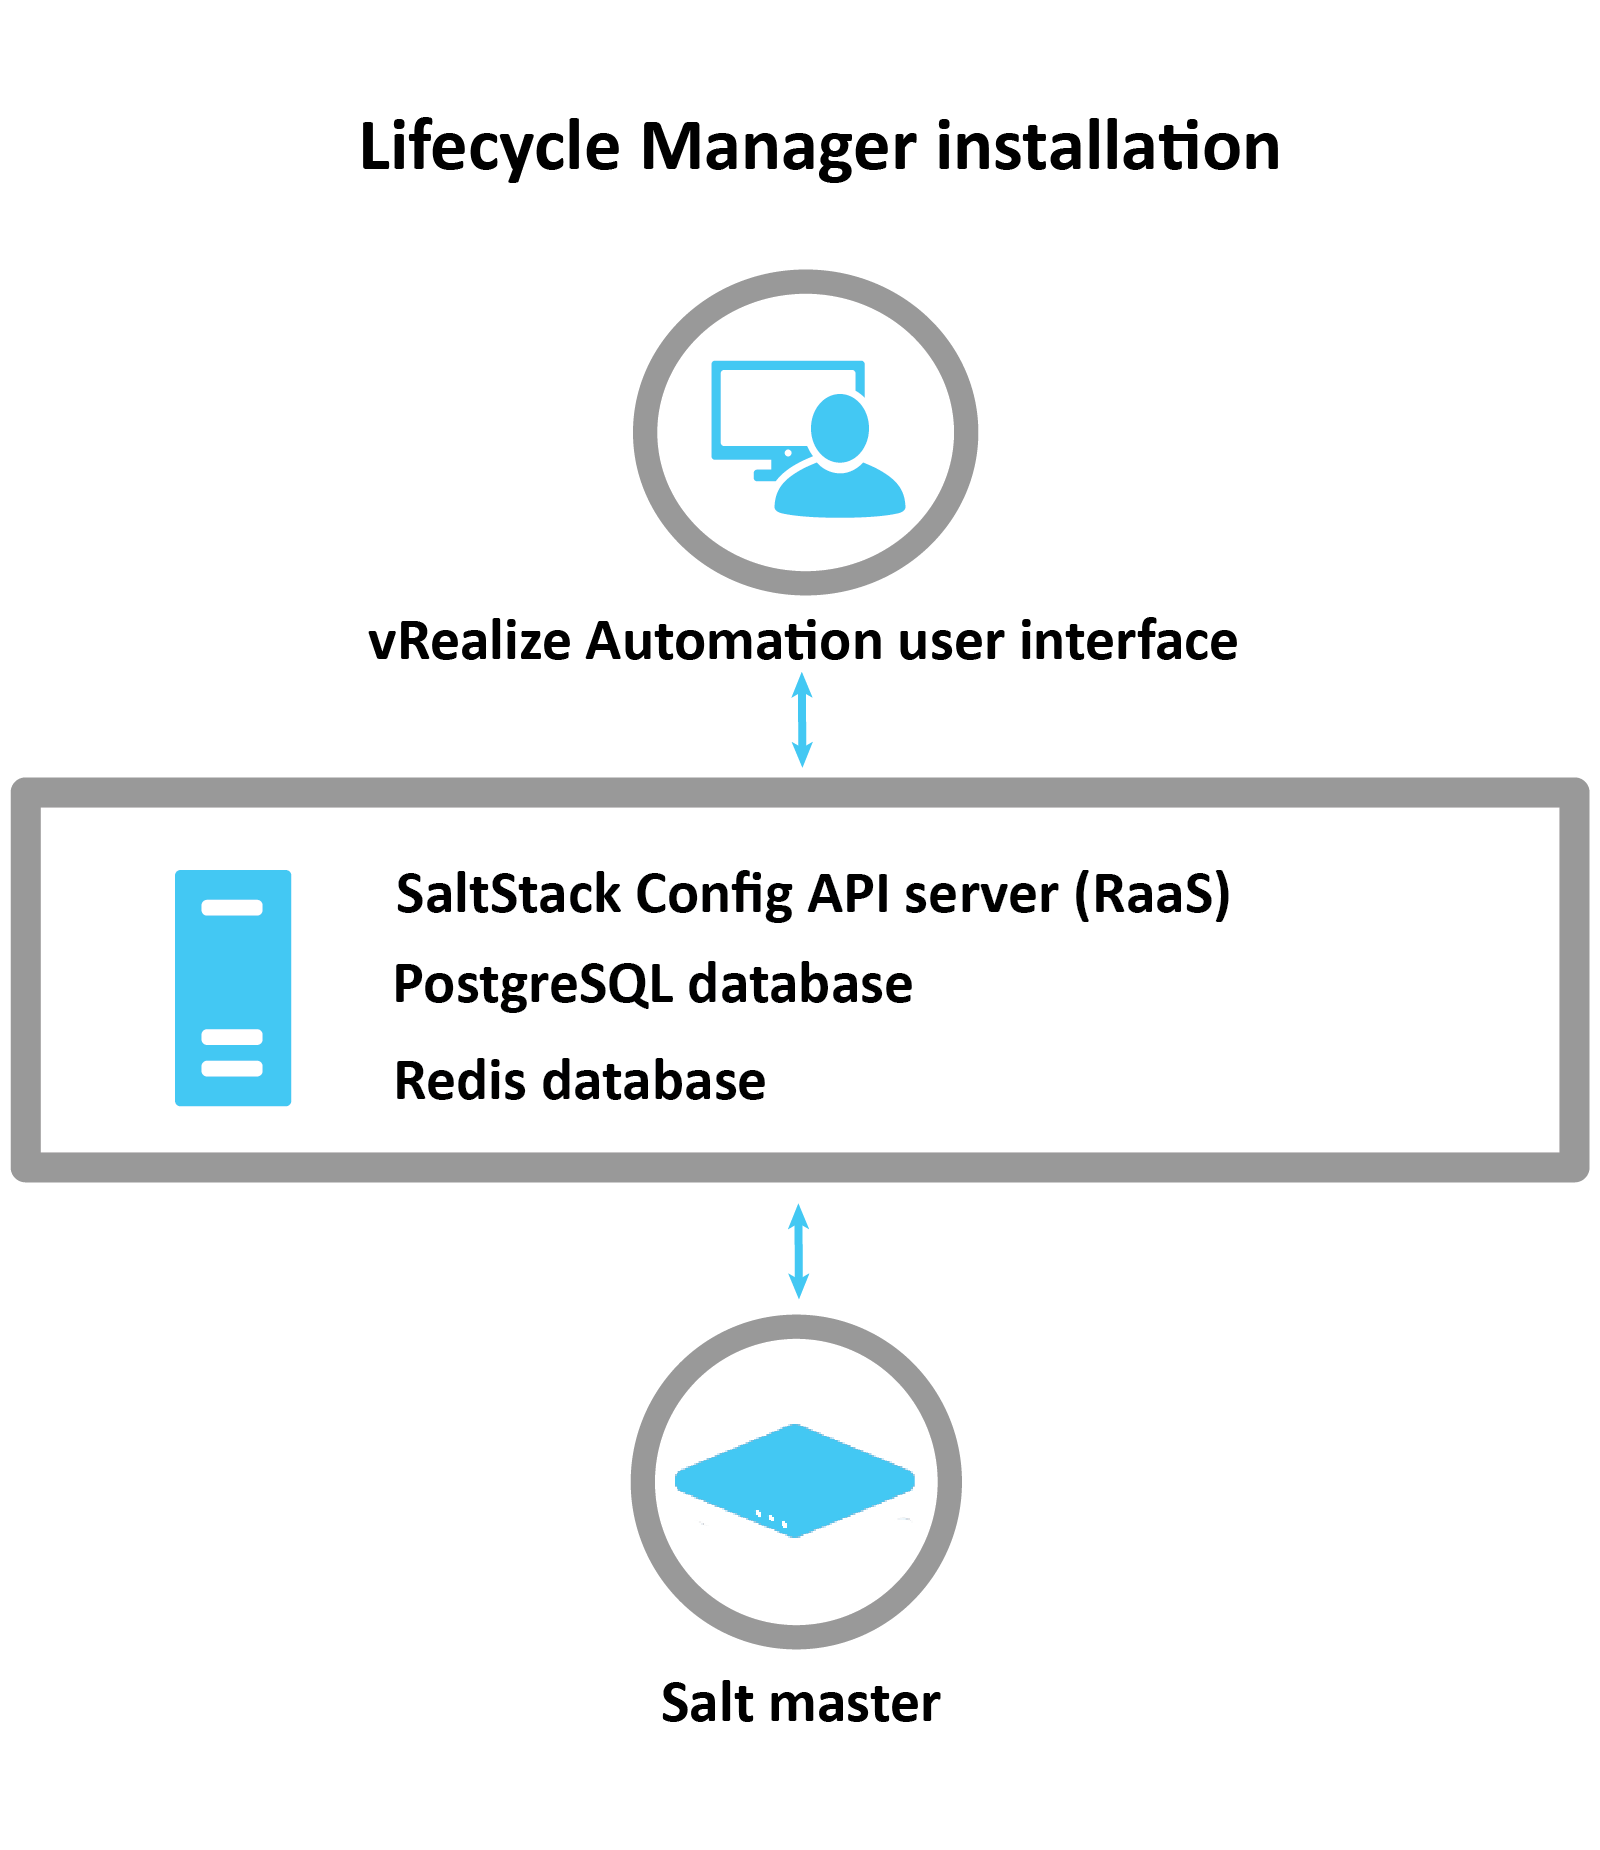 說明如何使用 LCM 安裝 SaltStack 的圖表：LCM 使用 vRA 介面安裝 RaaS 伺服器、Postgres 資料庫和 Redis 資料庫。安裝後，將設定 Salt 主節點。